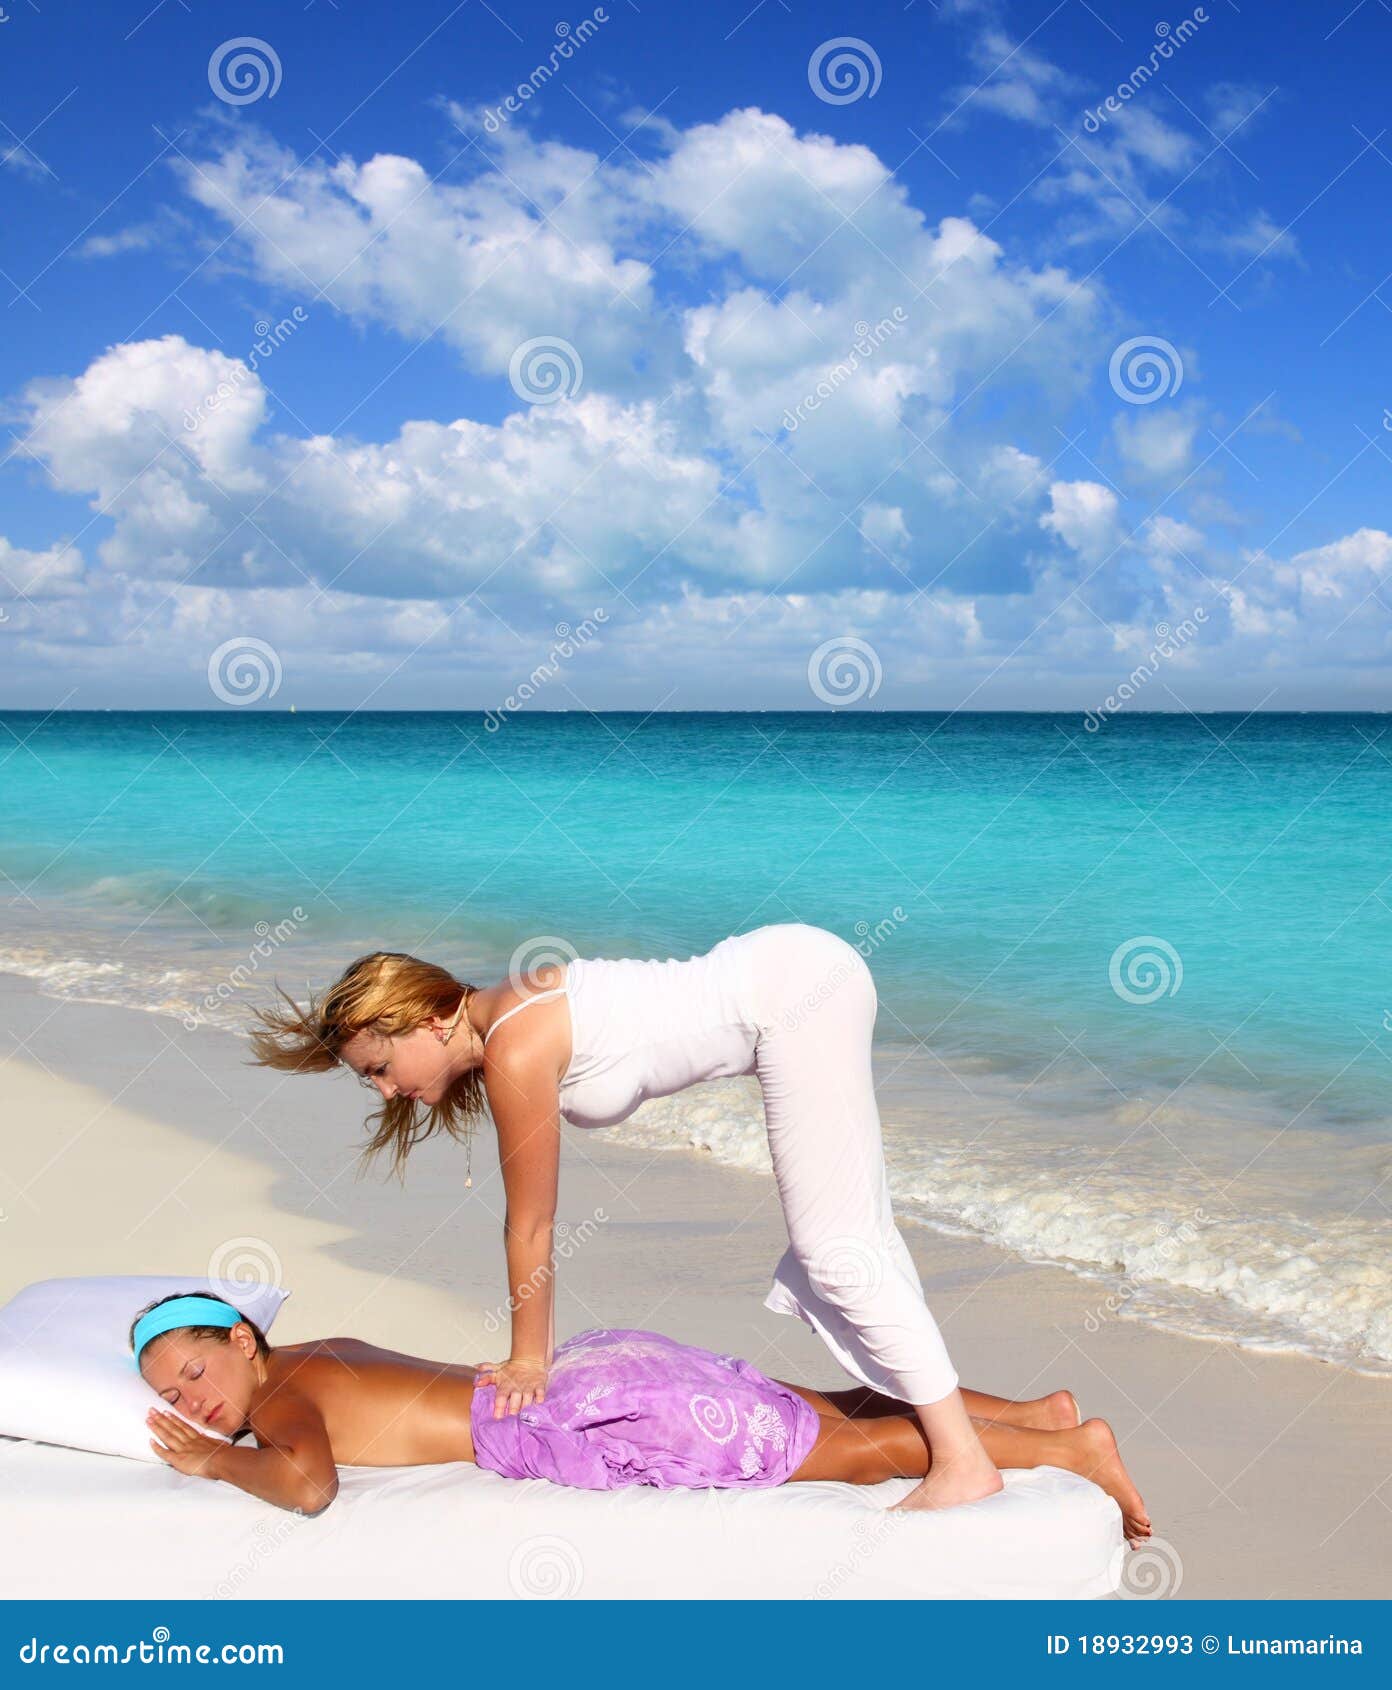 Caribbean Beach Massage Shiatsu Waist Therapy Stock Image Image Of